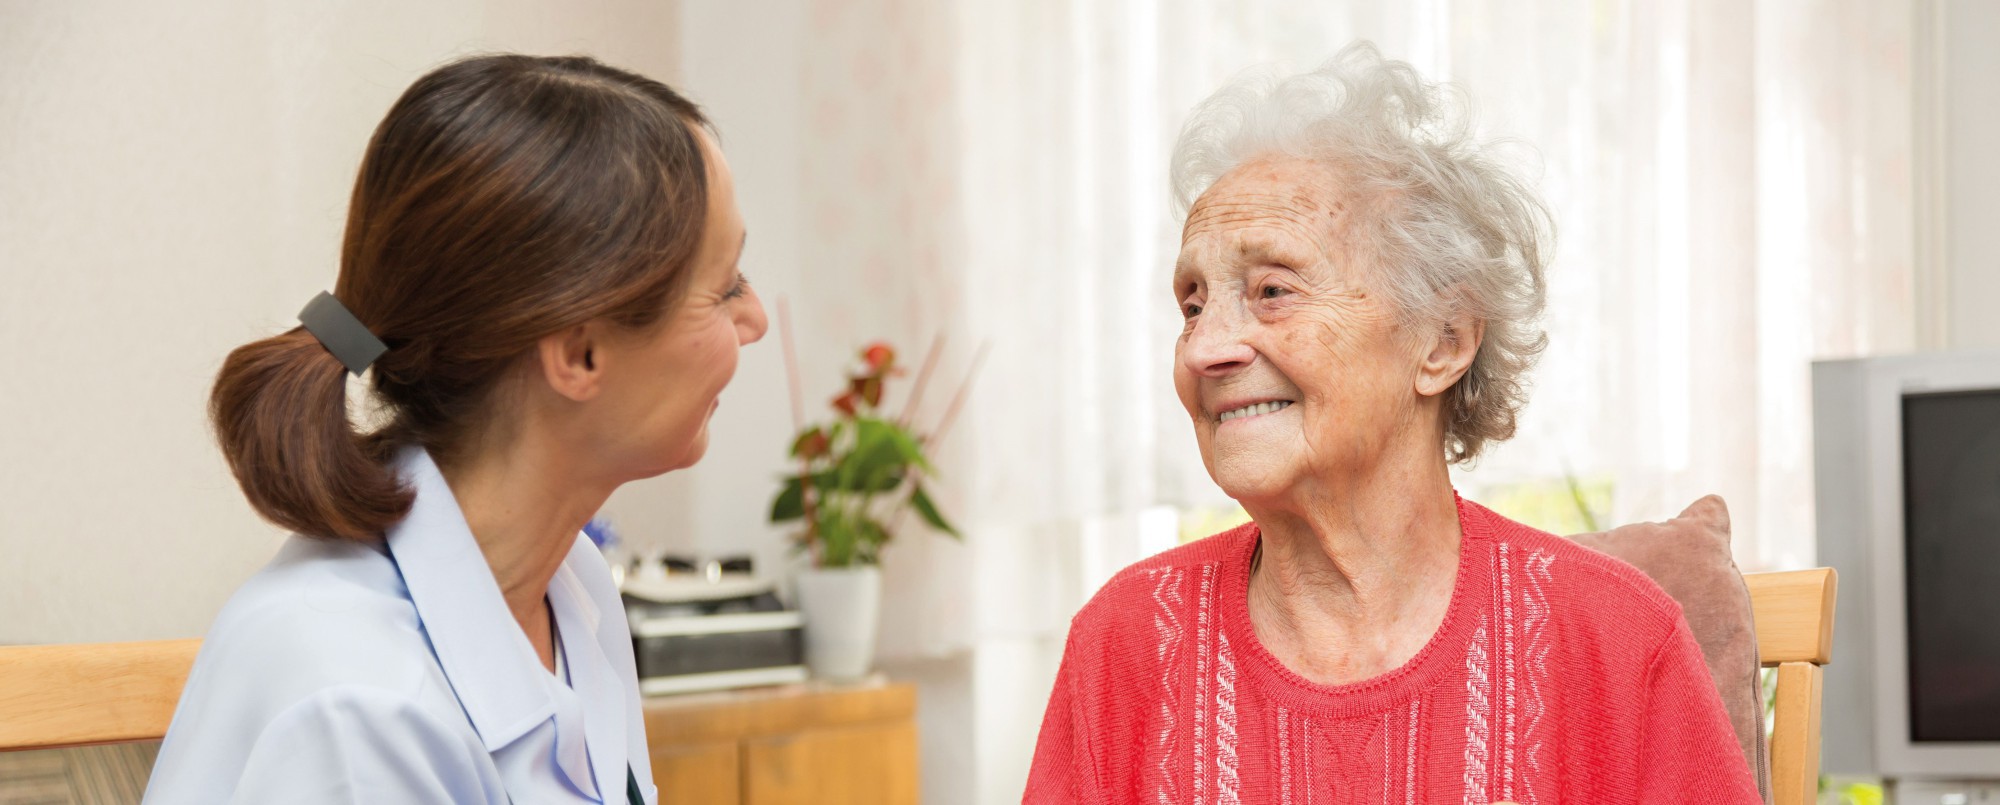 Individuelle Pflege zu Hause im Alter, bei Krankheit oder Behinderung